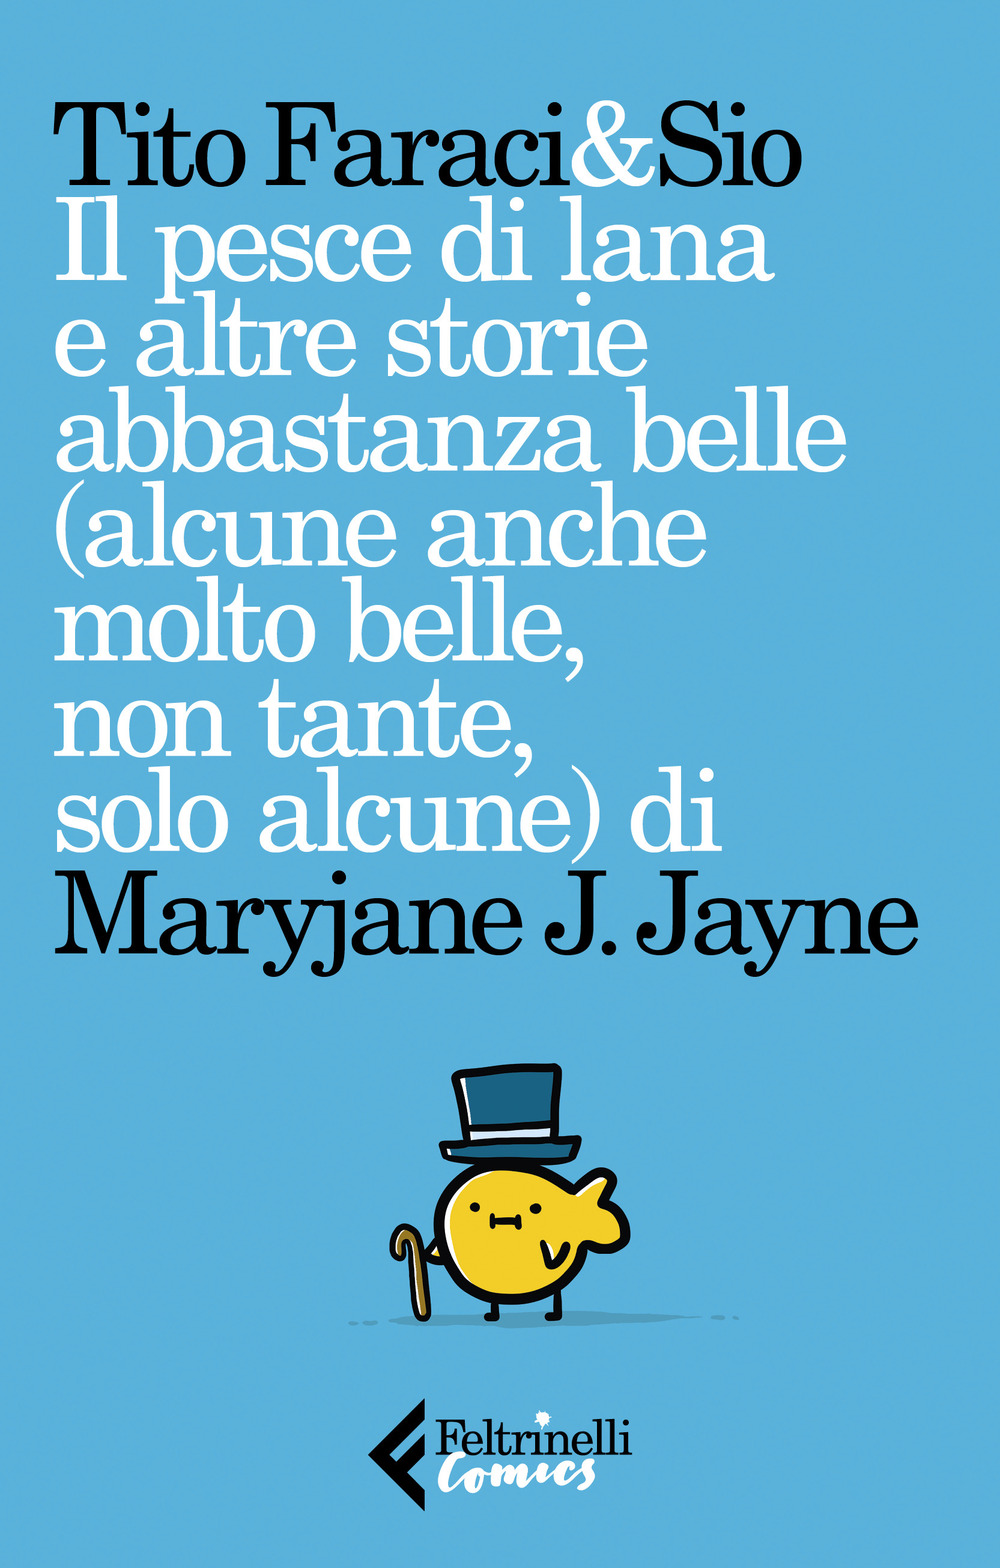 Image of Il pesce di lana e altre storie abbastanza belle (alcune anche molto belle, non tante, solo alcune) di Maryjane J. Jayne